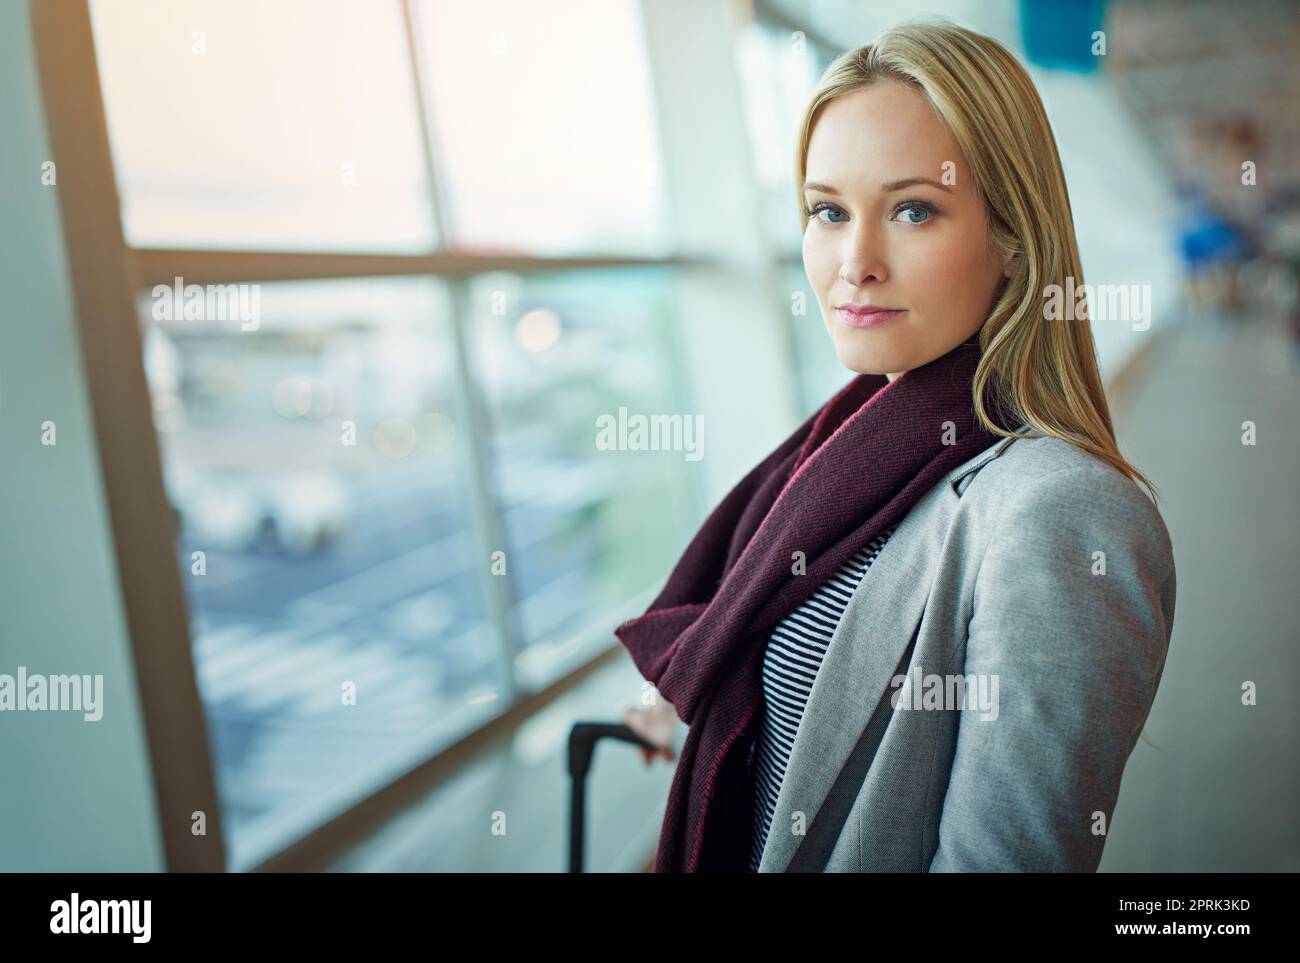 Ist ein erfahrener Reisender. Porträt einer jungen Frau, die auf einem Flughafen steht. Stockfoto